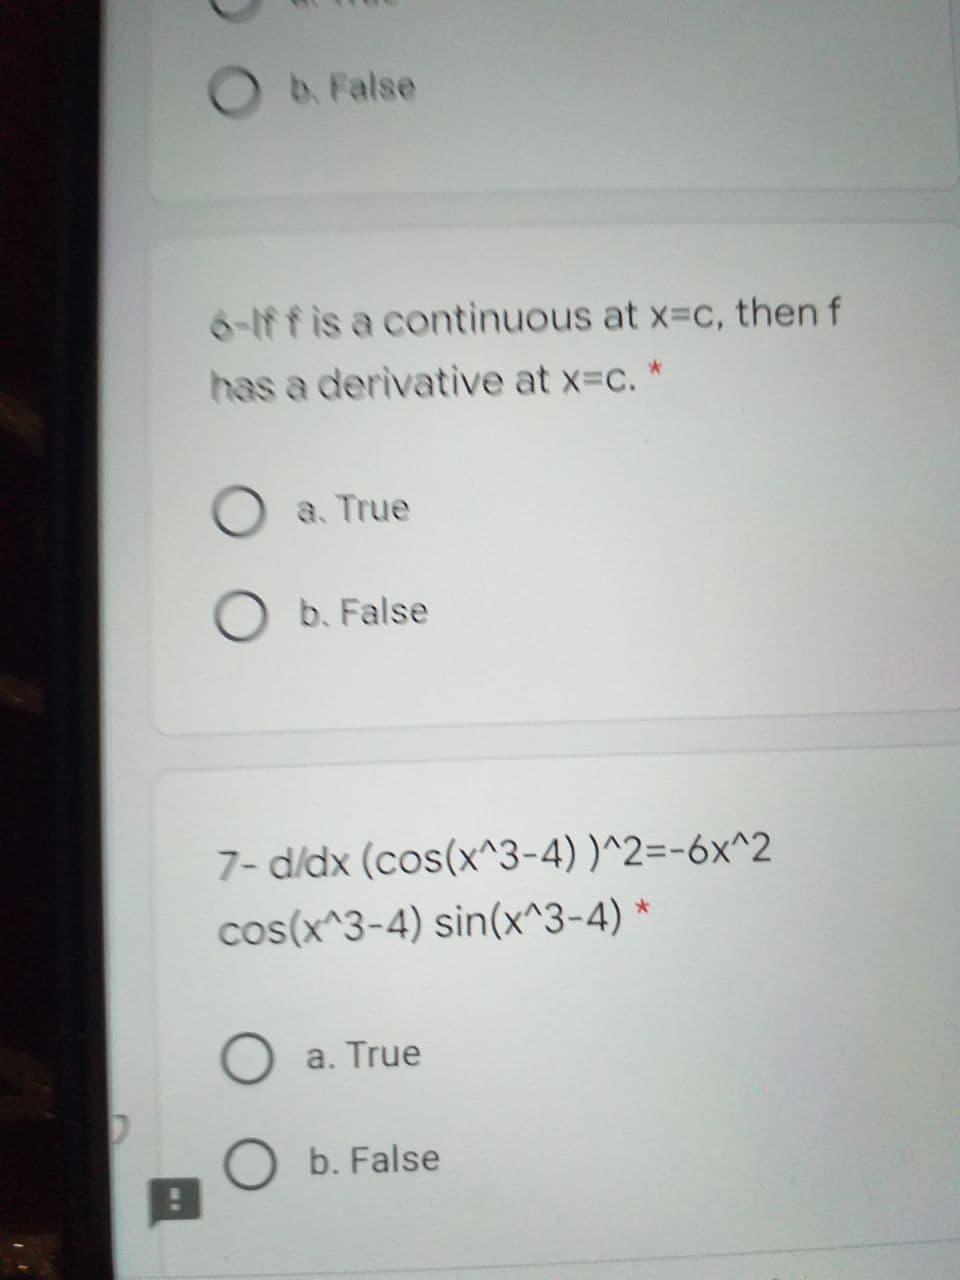 O b. False
6-Iff is a continuous at x=c, then f
has a derivative at x=c. *
O a. True
b. False
7- d/dx (cos(x^3-4) )^2=-6x^2
cos(x^3-4) sin(x^3-4) *
a. True
O b. False
